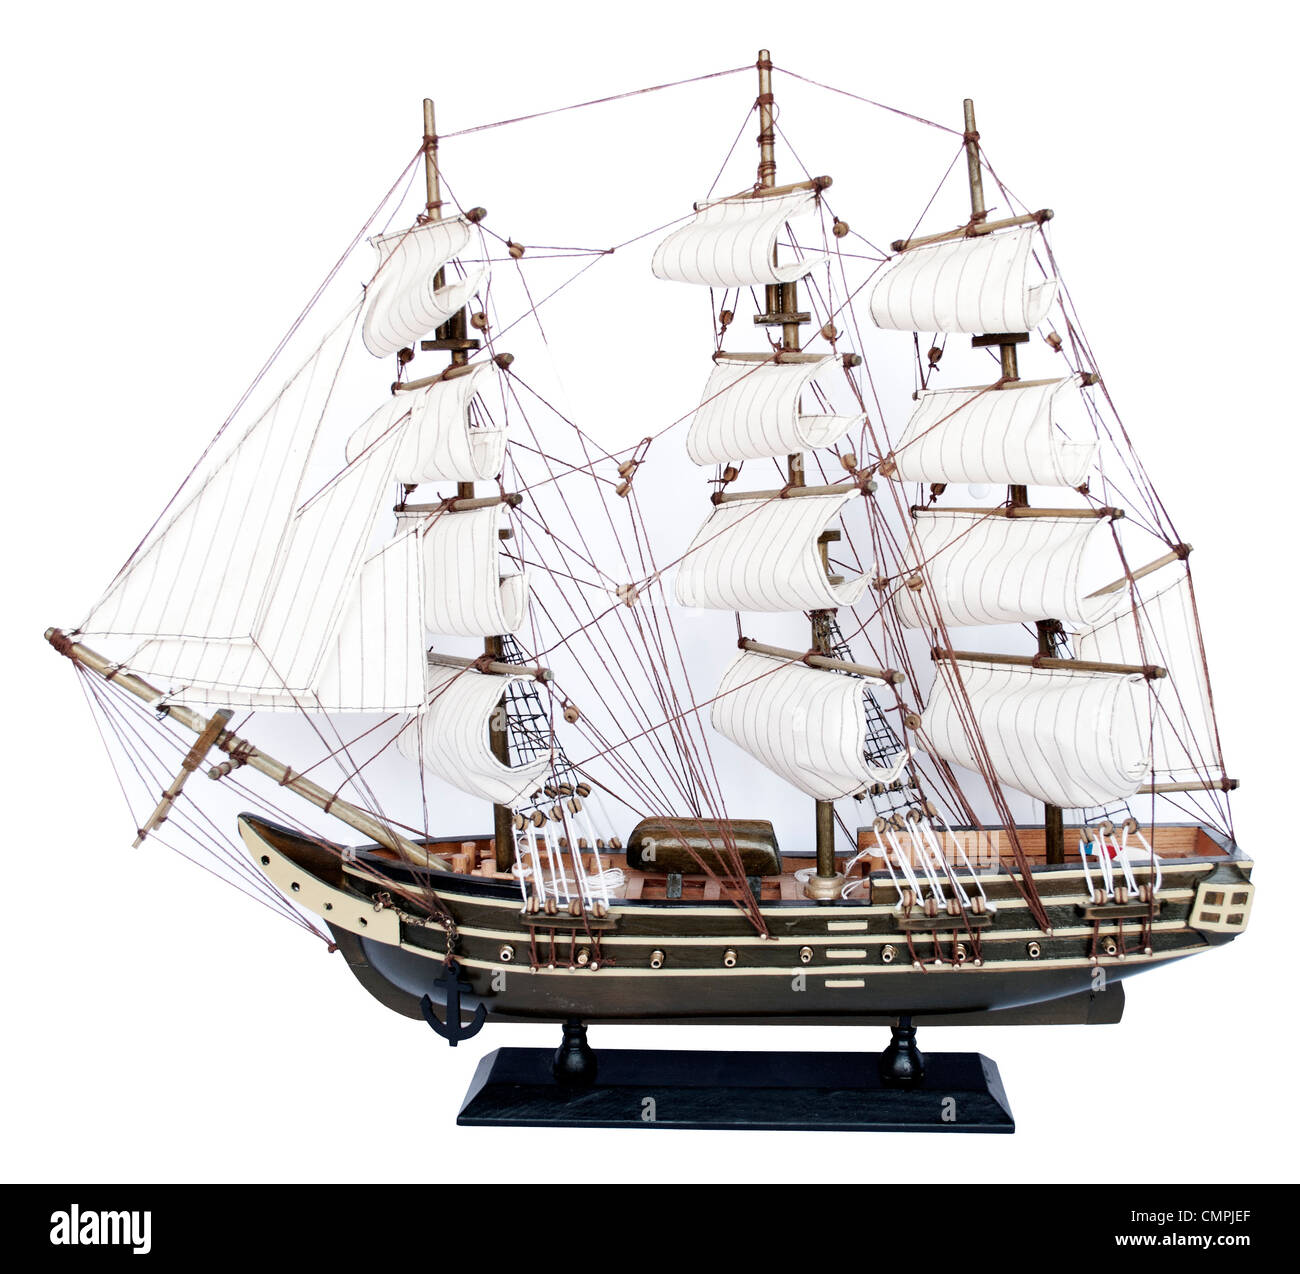 Ship model isolated on white background Stock Photo